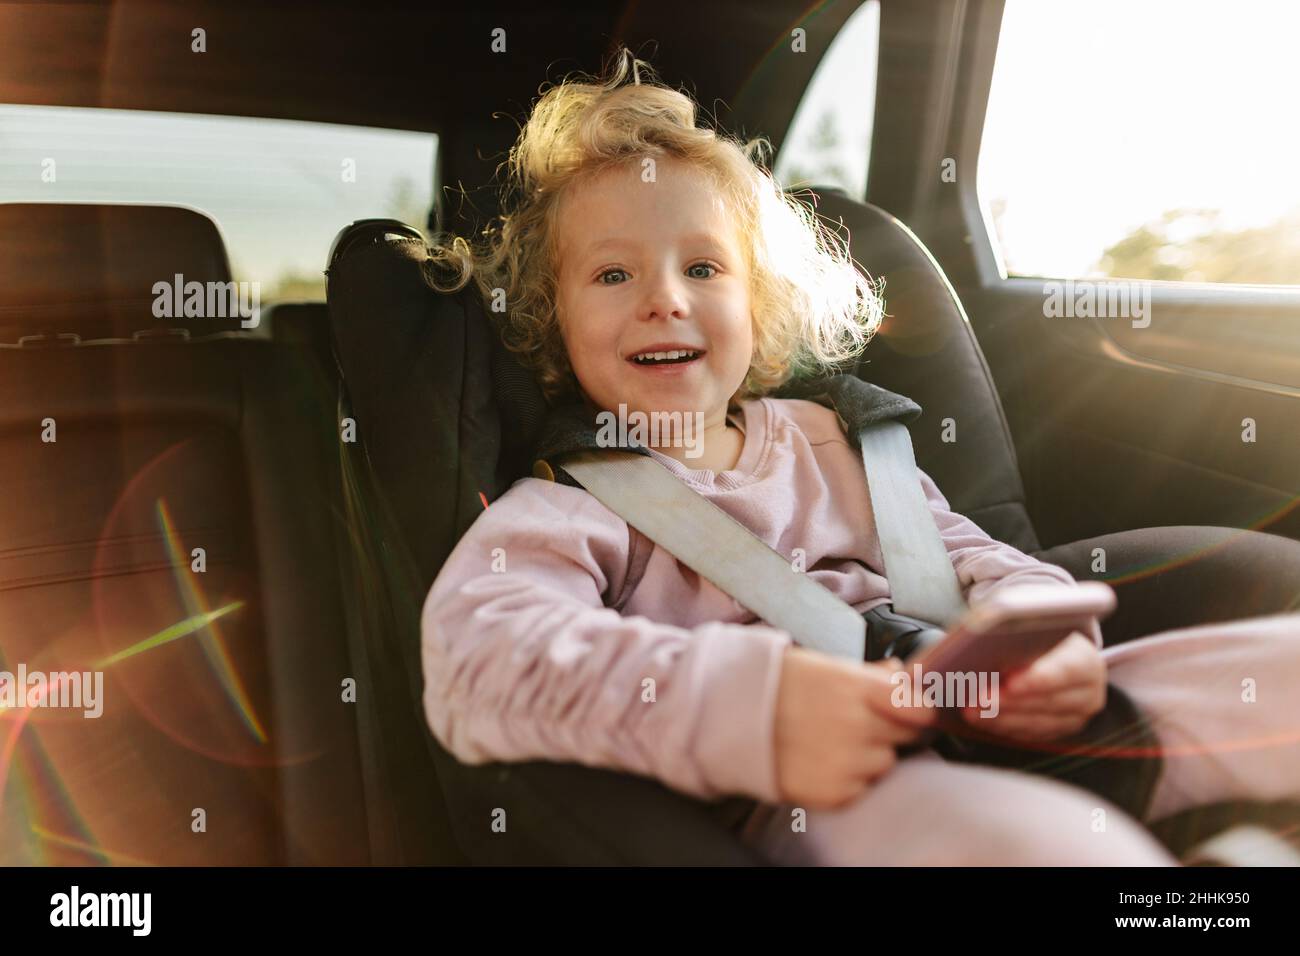 Niño Sentado En Un Asiento De Auto Y Colocando Un Cinturón De Seguridad  Foto de archivo - Imagen de colegiala, poner: 199139258